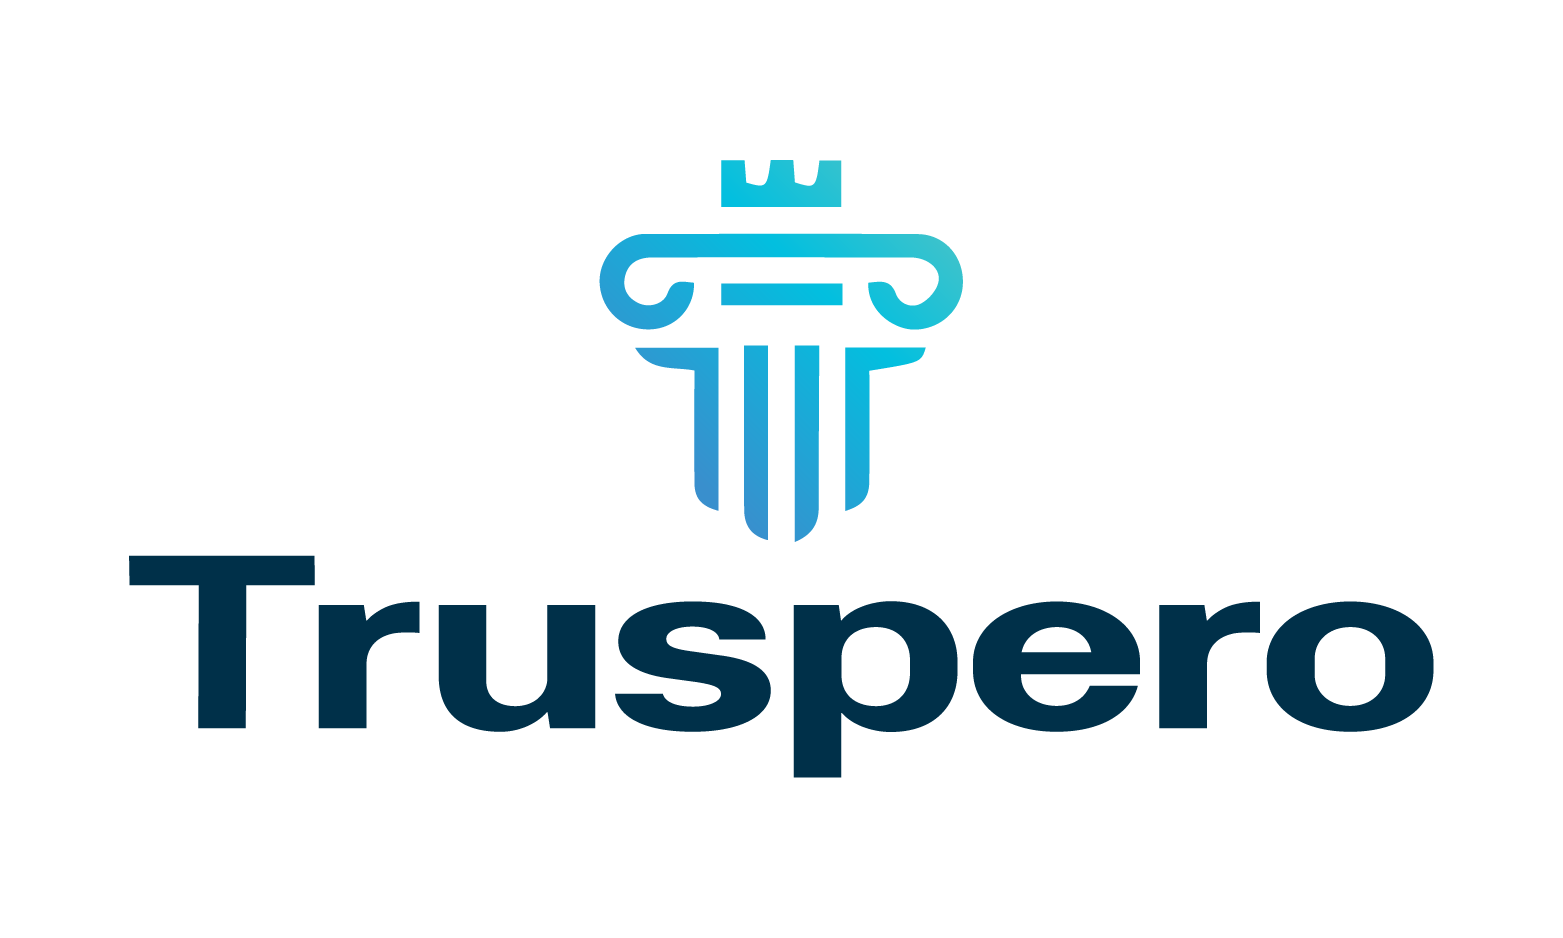 Truspero.com - Creative brandable domain for sale